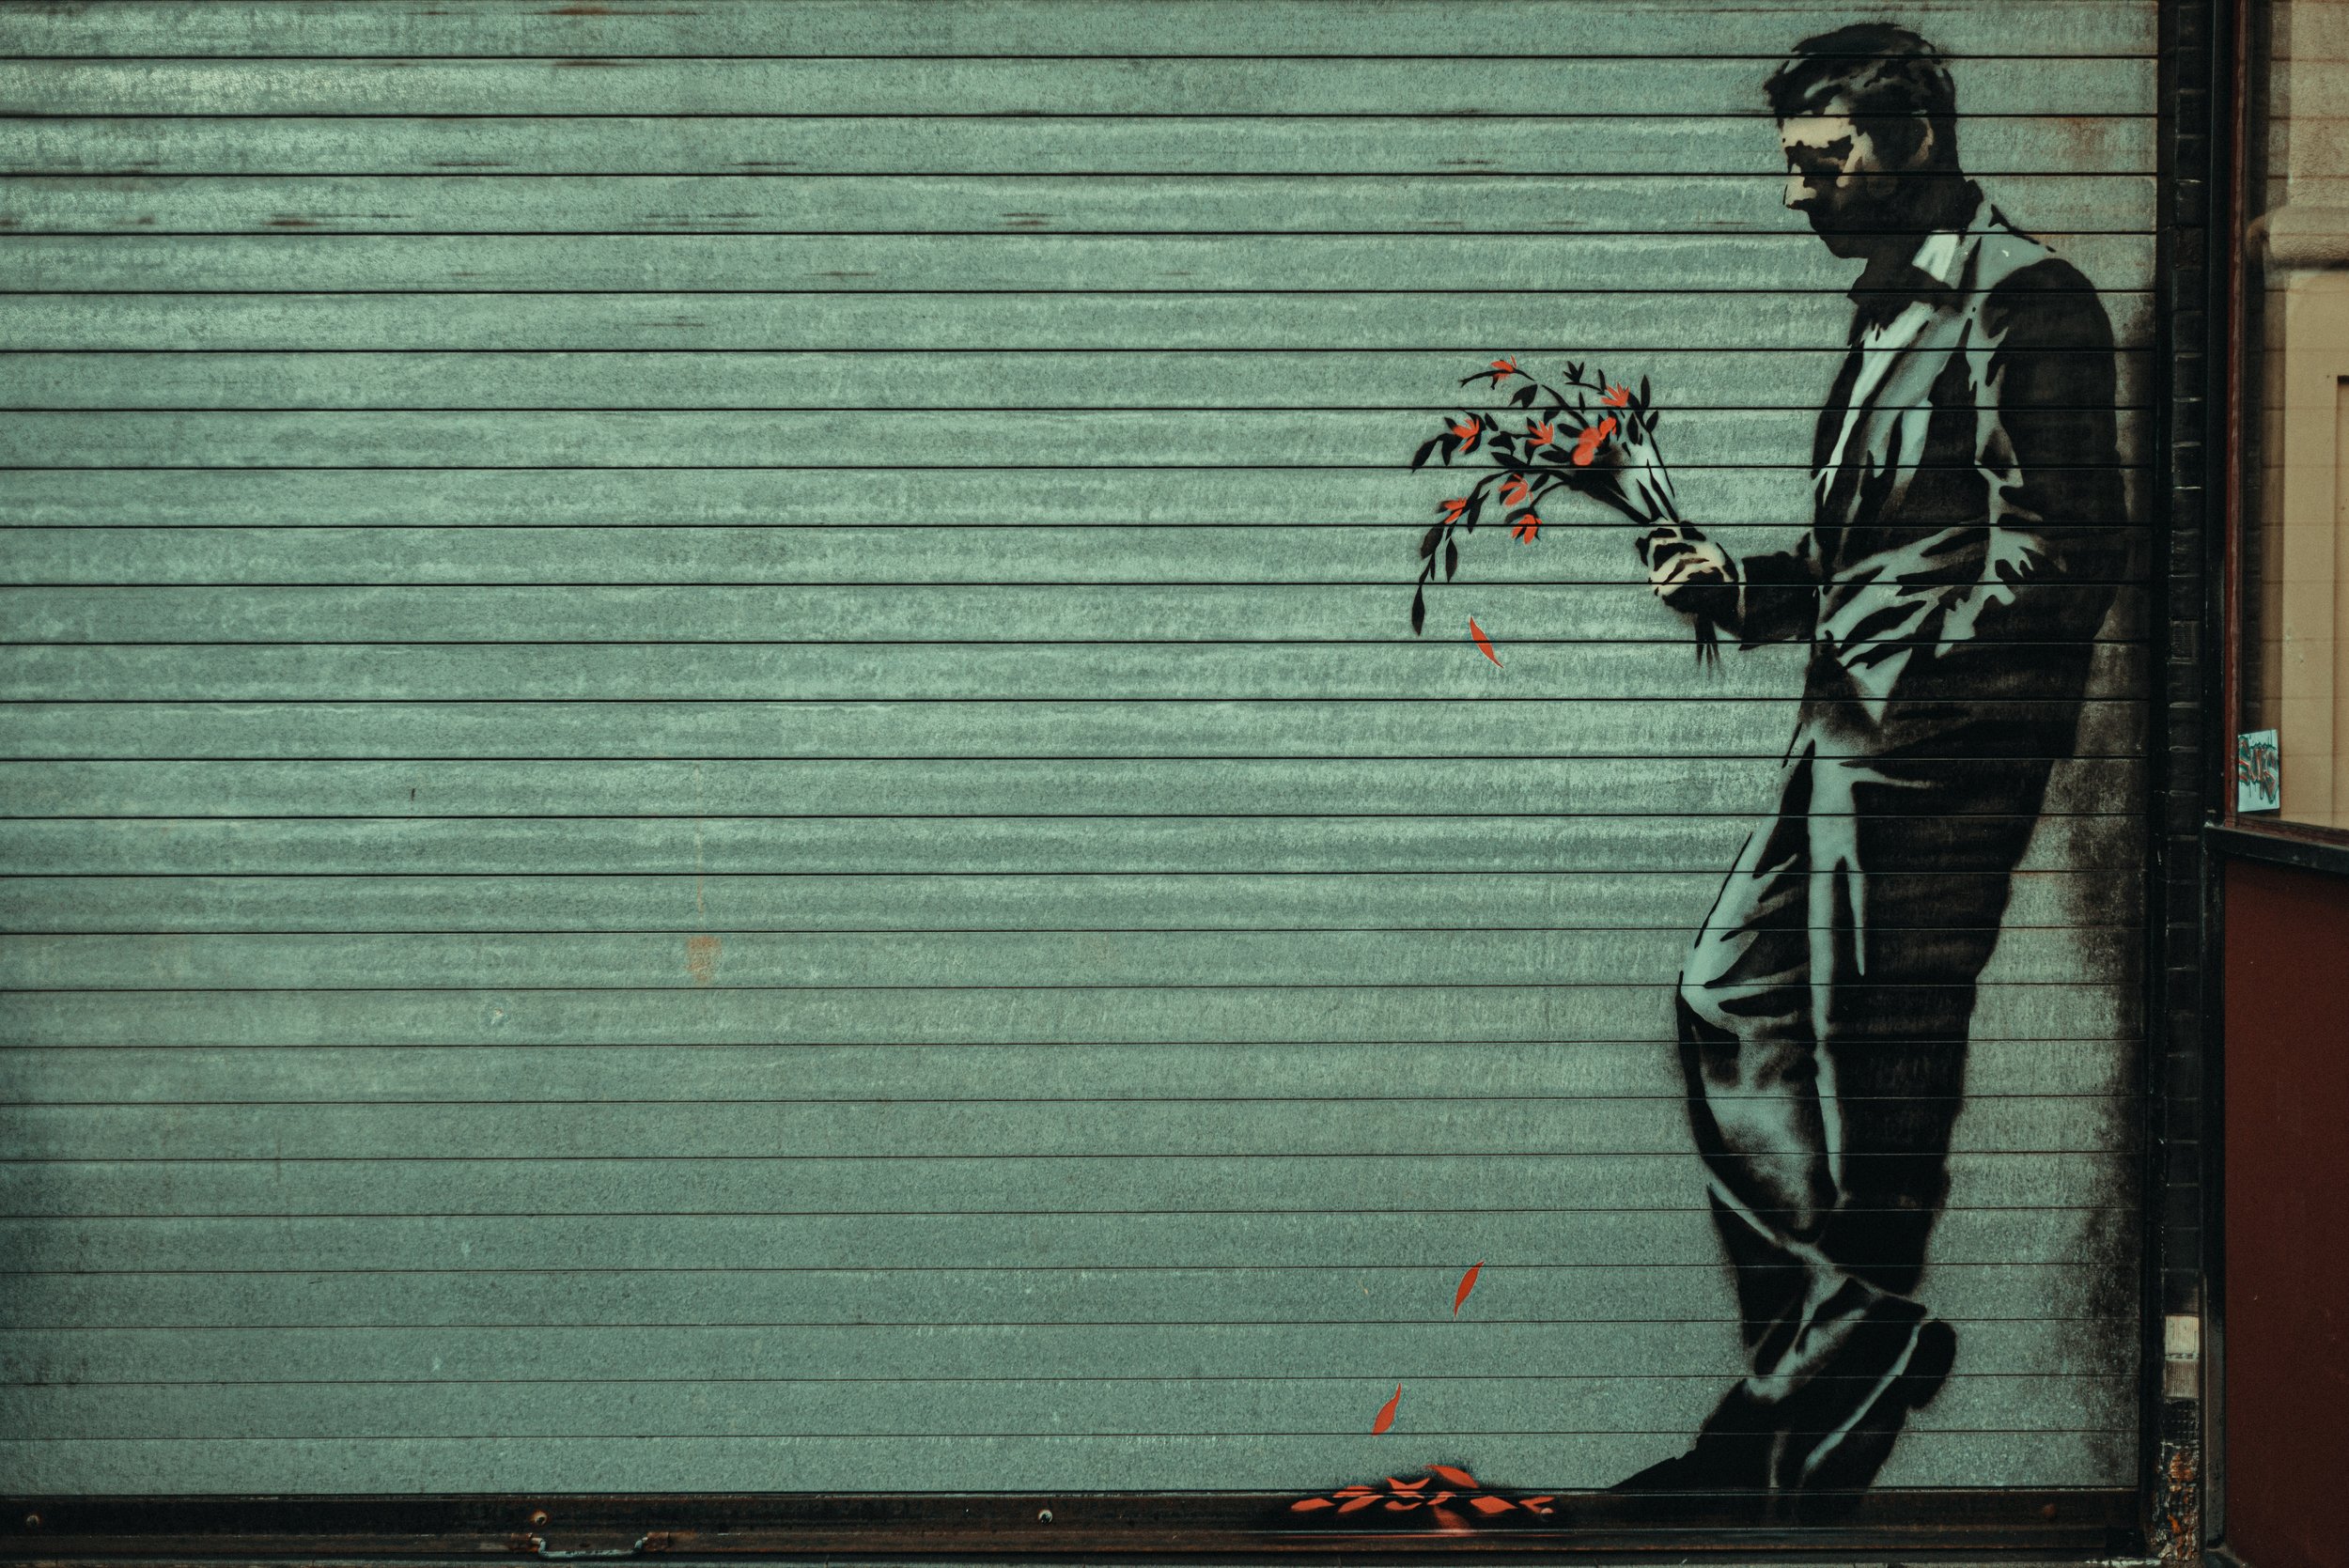 2013-10-24 Banksy Mural at Hustler Club NYC-31.jpg